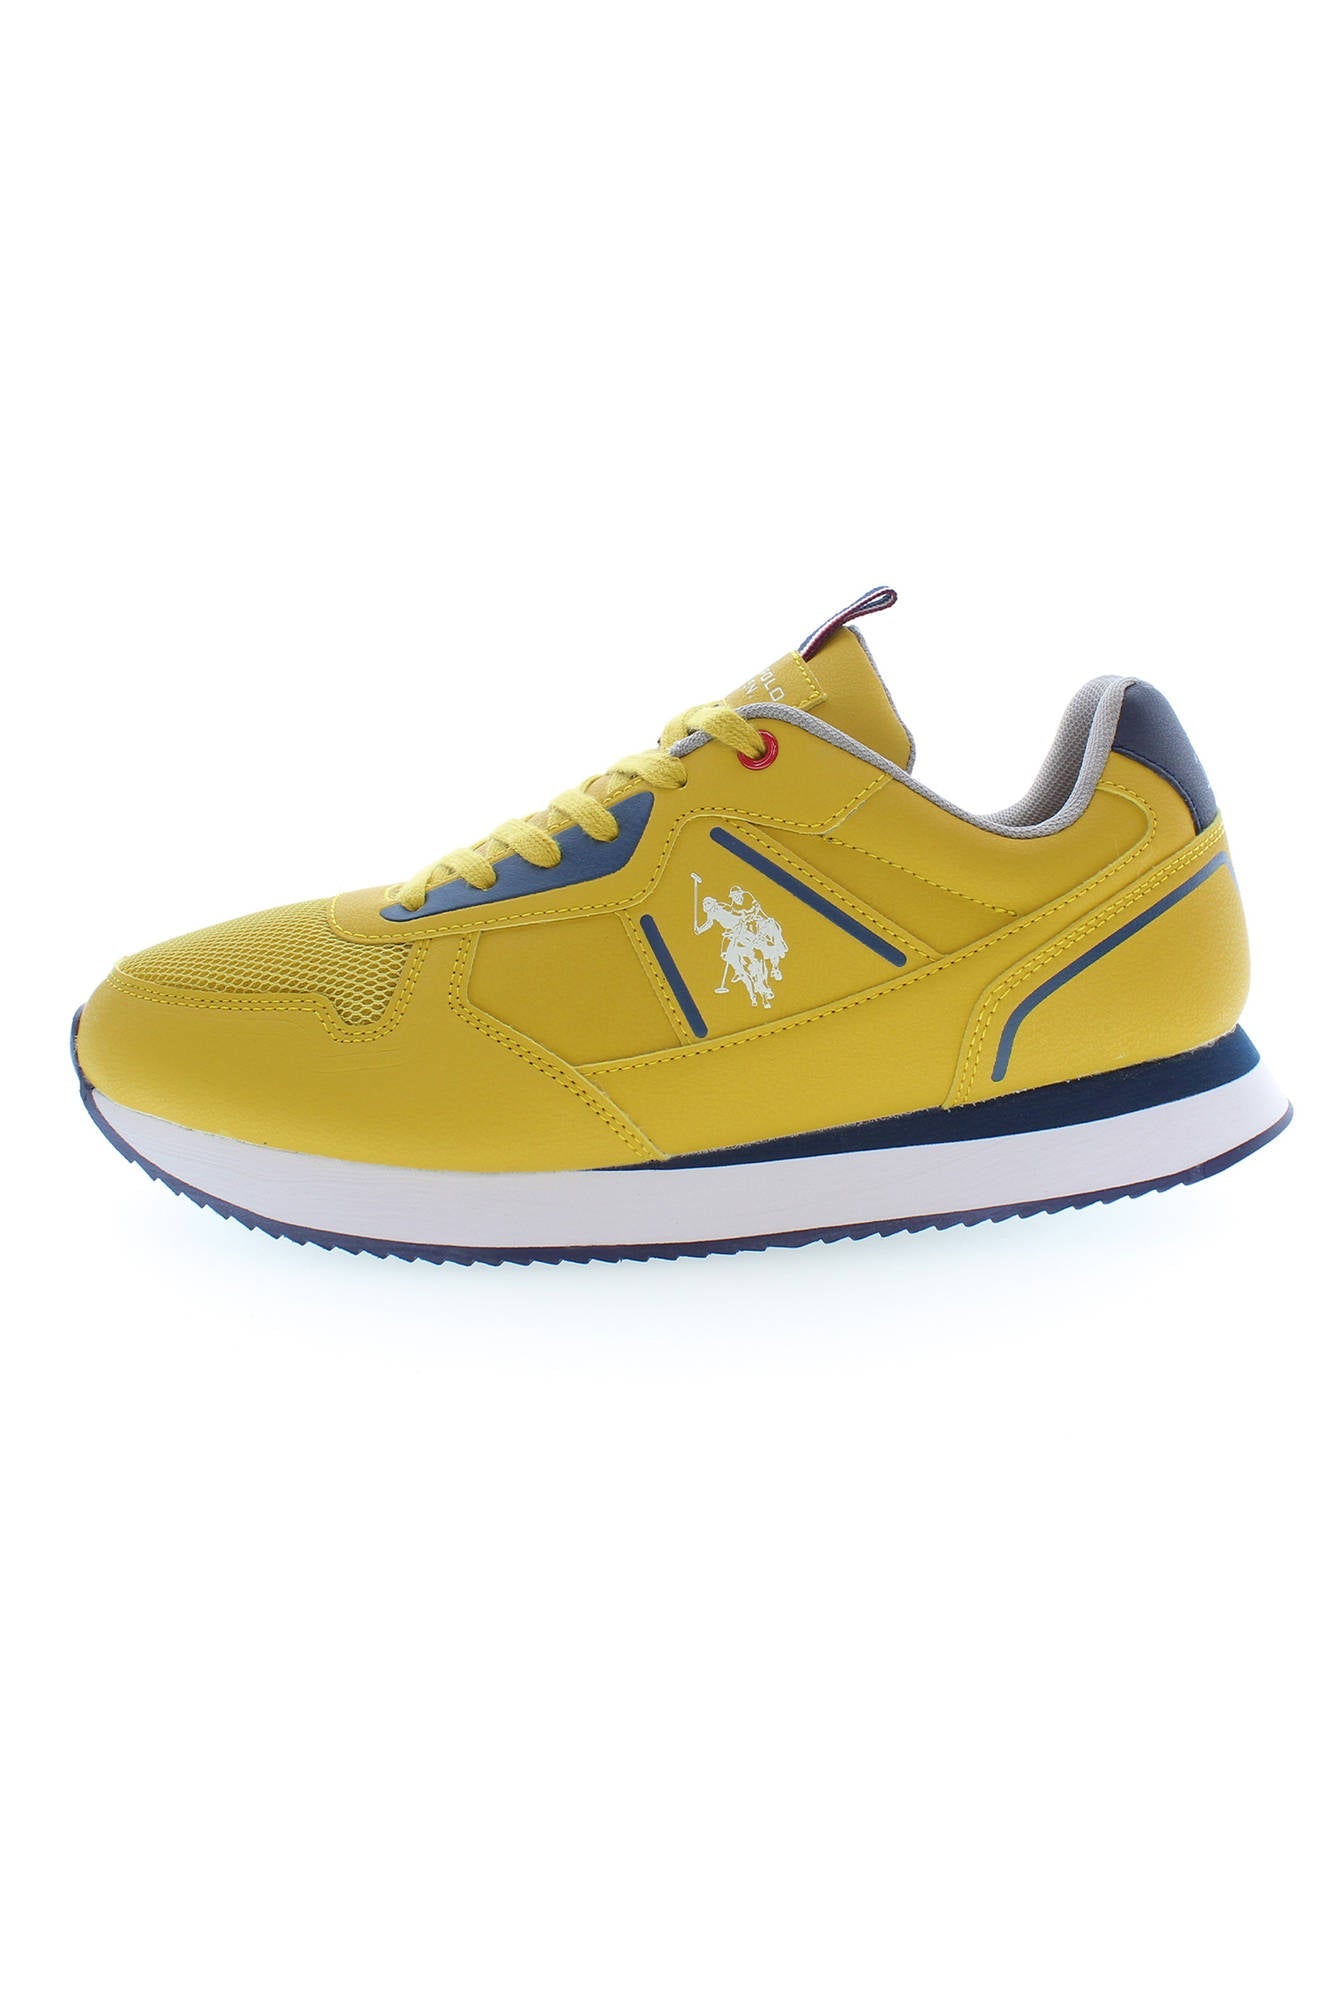 U.S. POLO ASSN. Yellow Sneakers - Fizigo